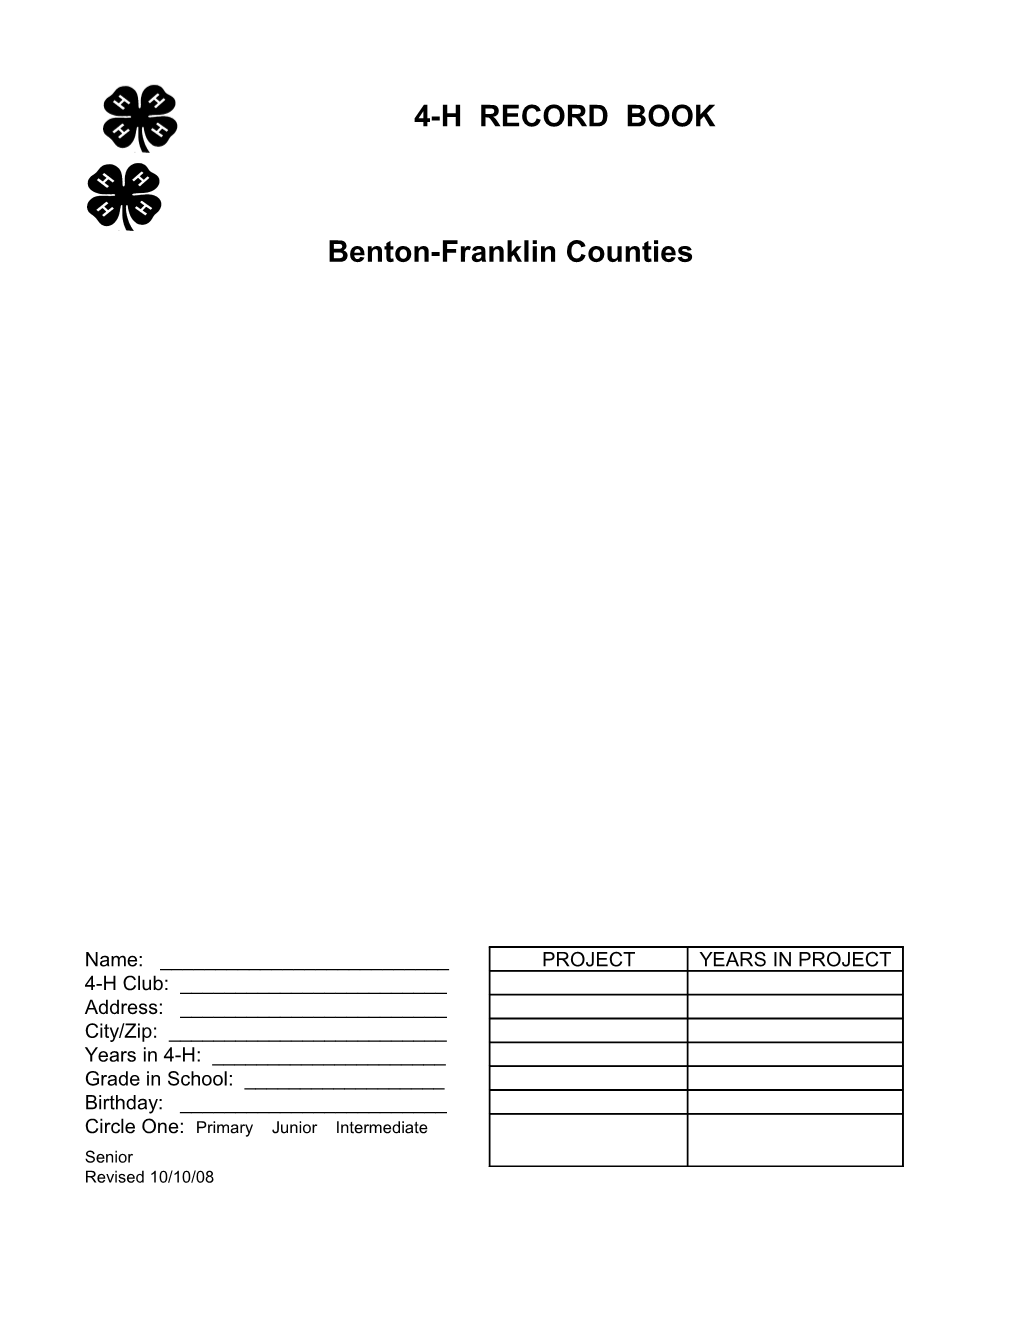 Benton-Franklin Counties